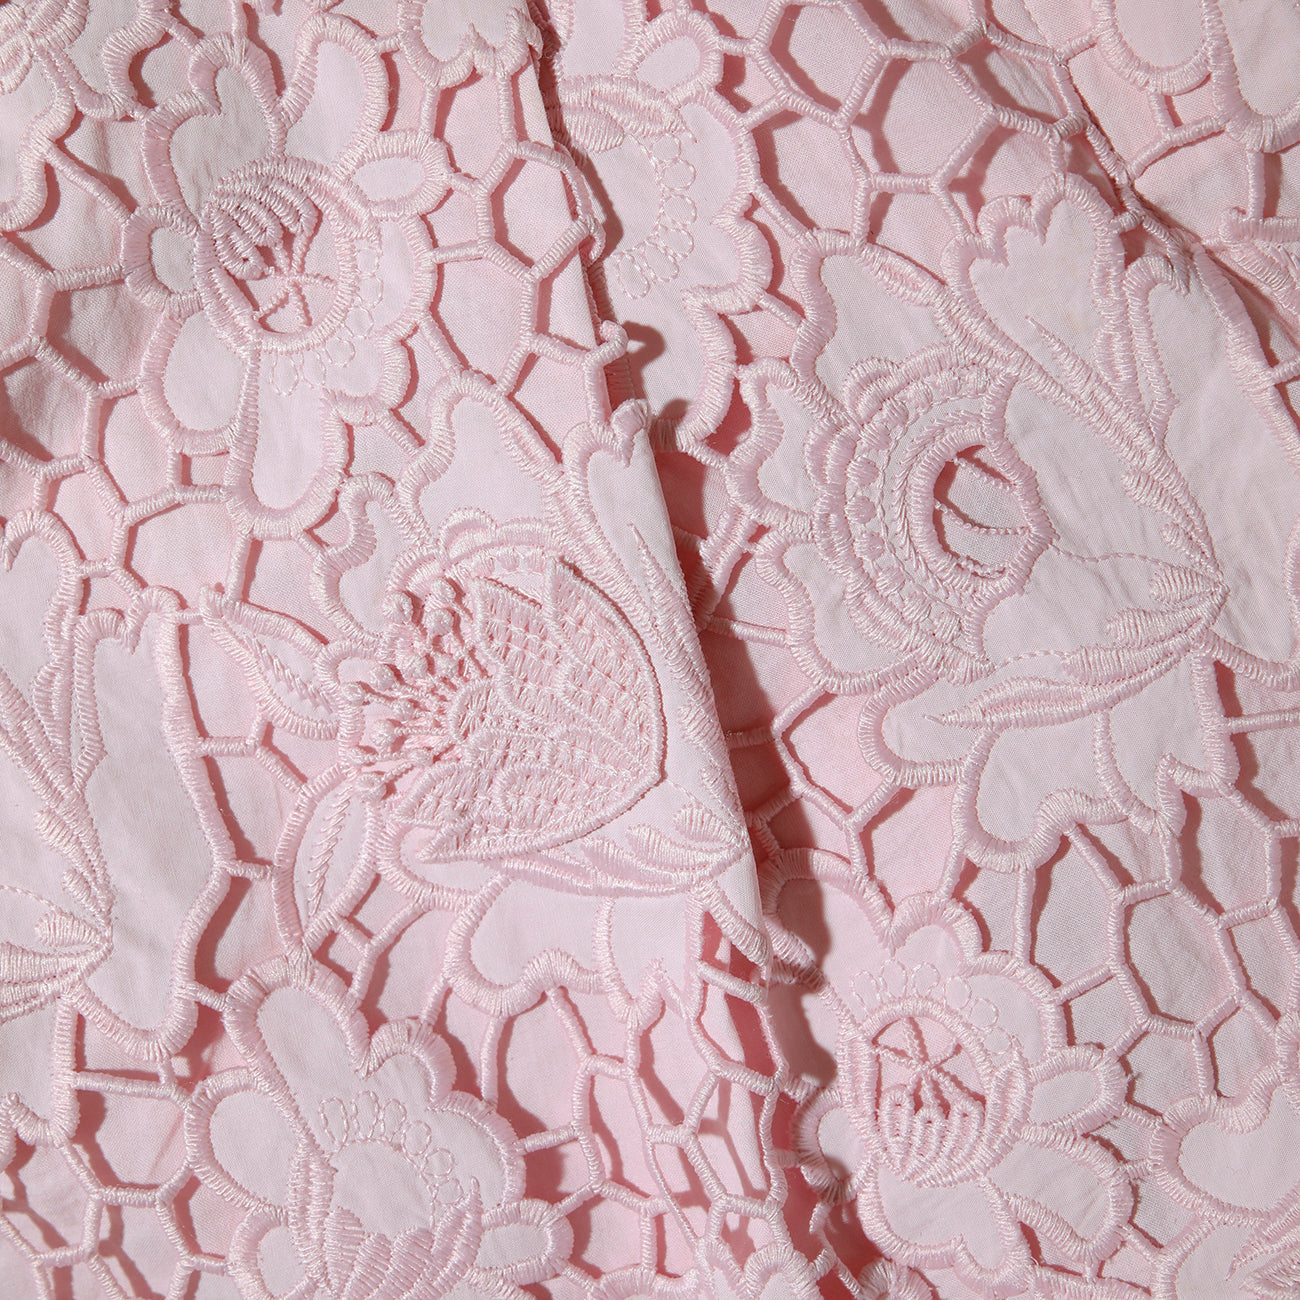 Pink 3D Cotton Lace Shorts